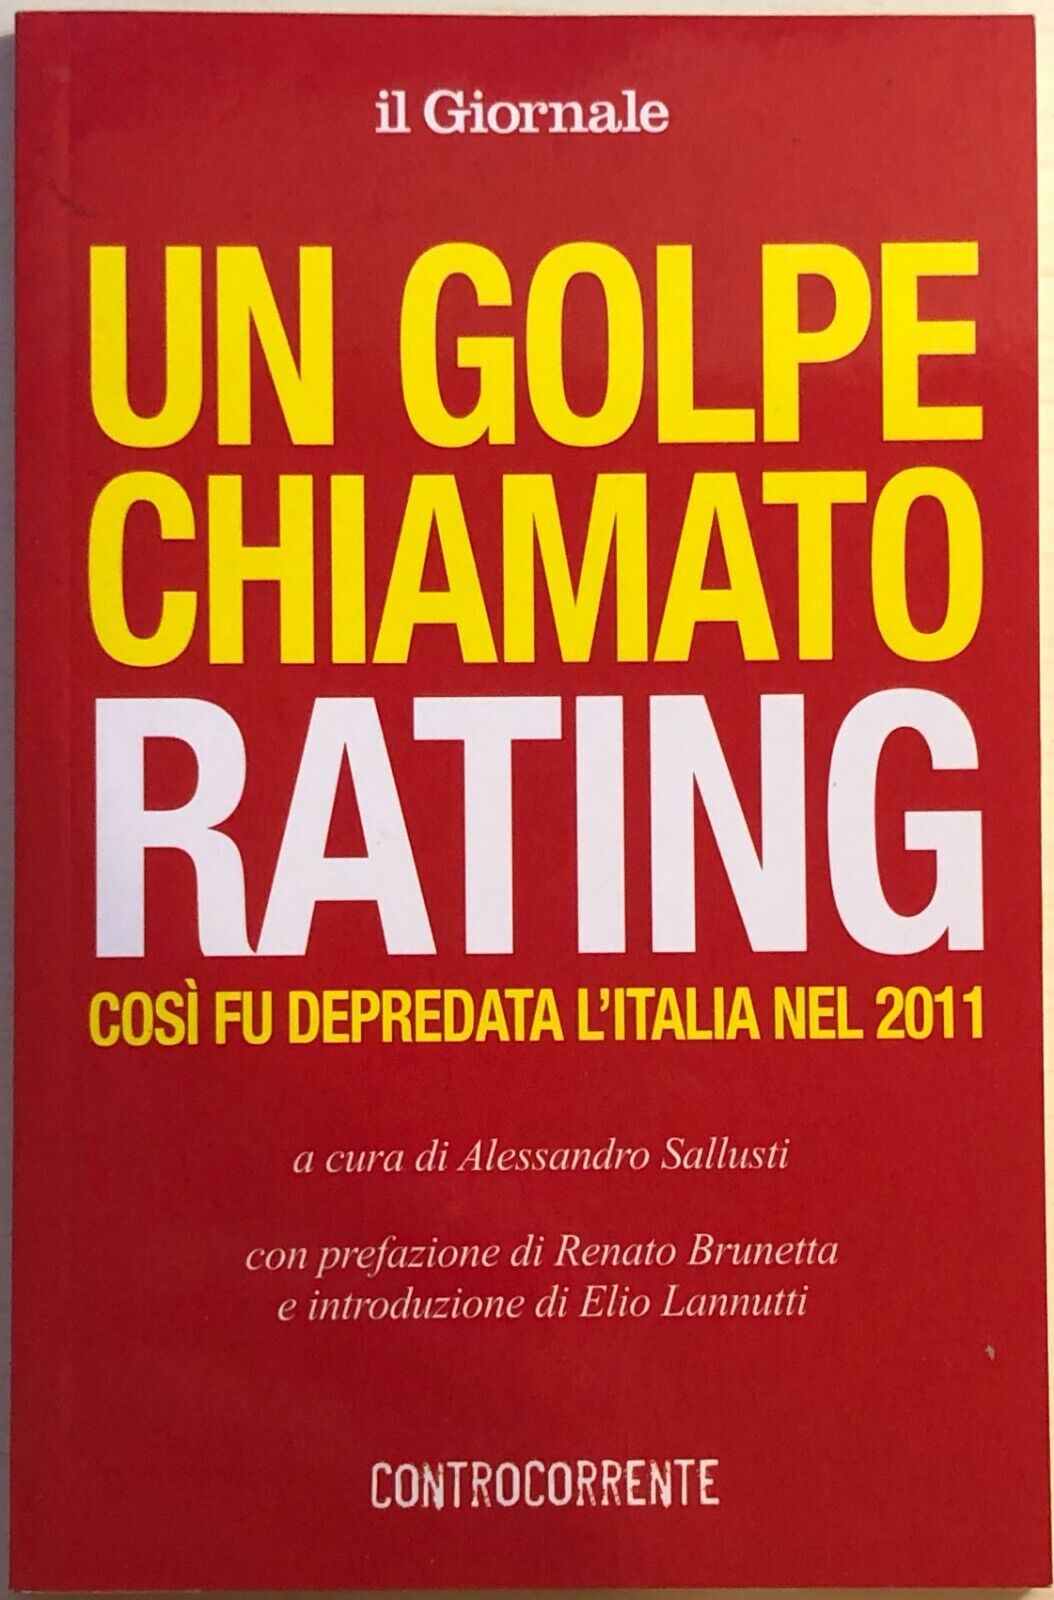 Un golpe chiamato rating di Alessandro Sallusti, 2011, Il Giornale